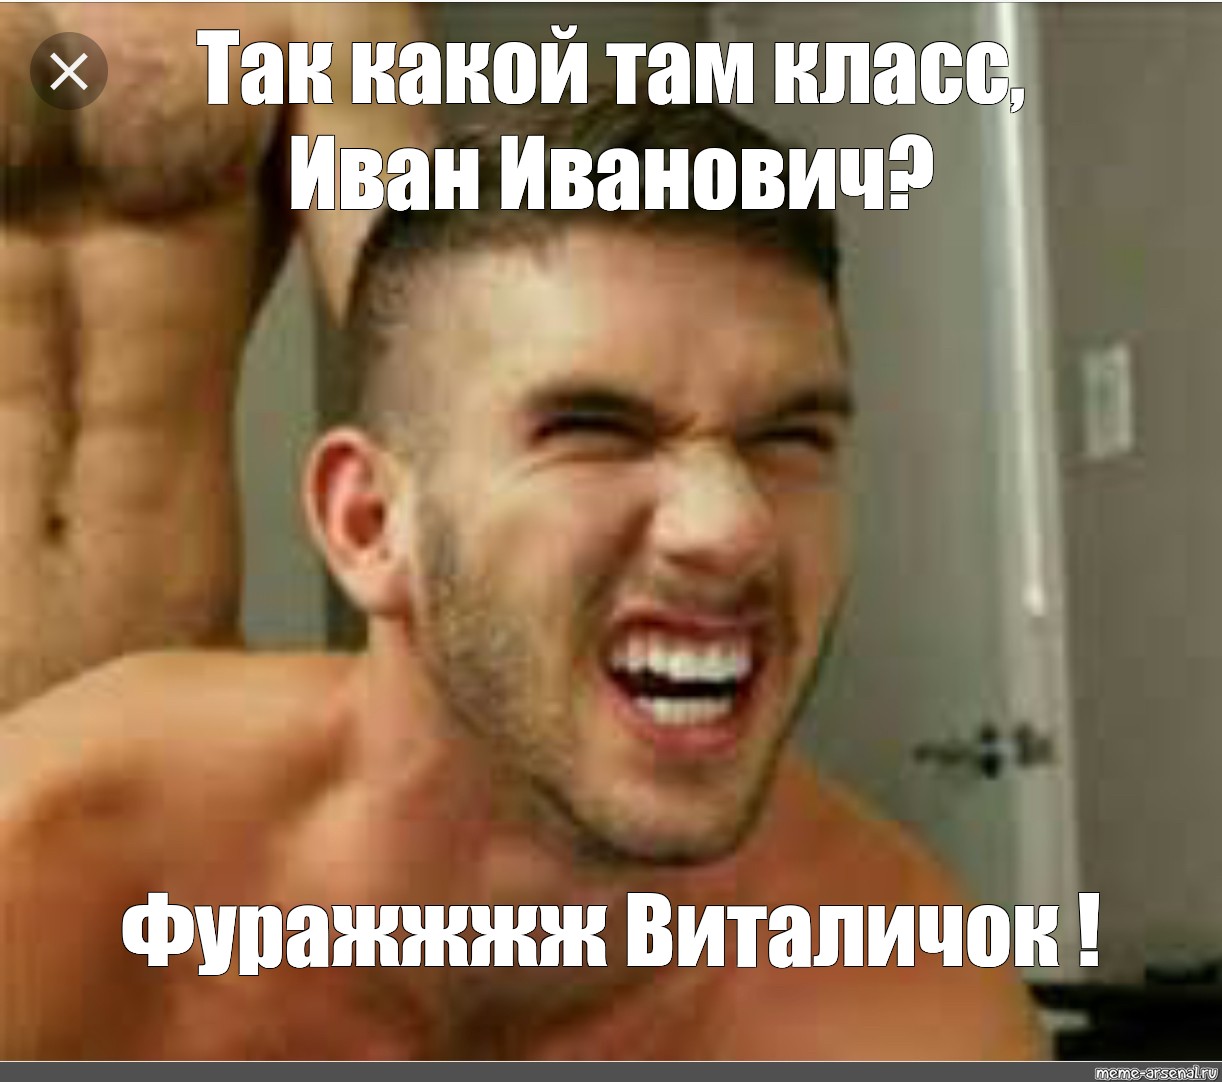 русская песня про геев фото 24